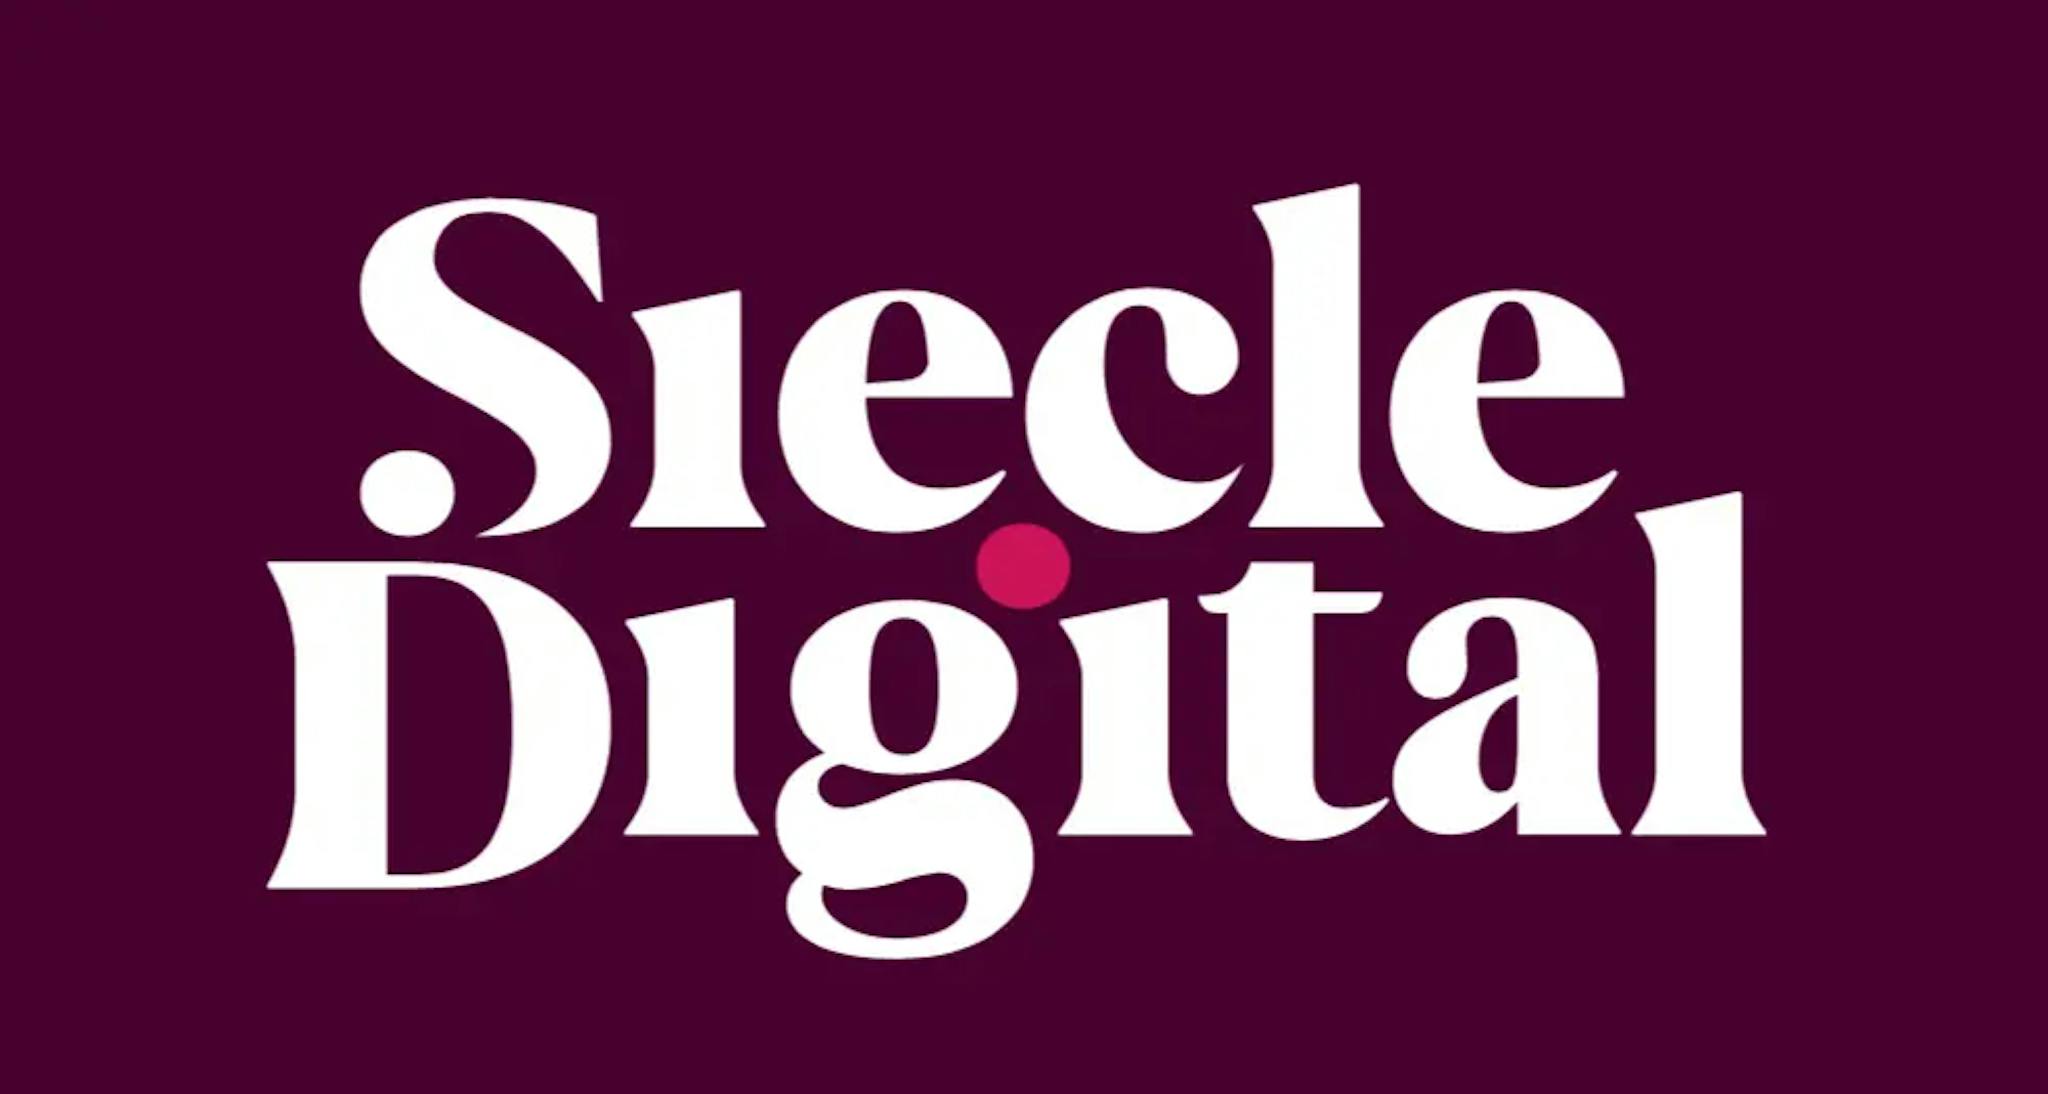 Siecle Digital